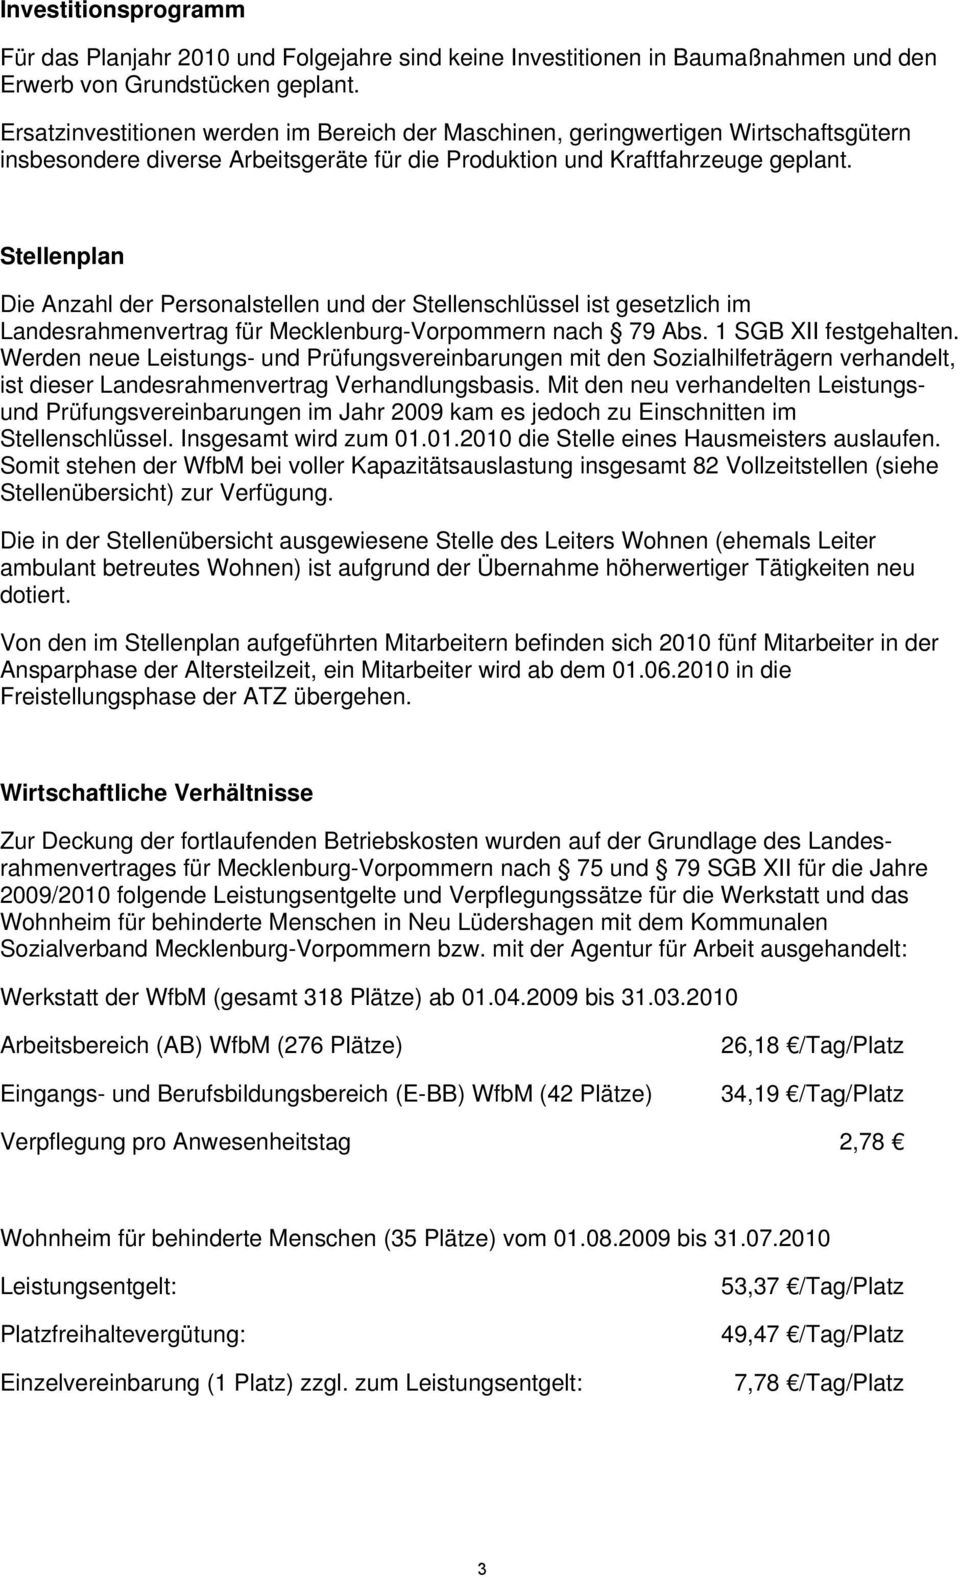 Stellenplan Die Anzahl der Personalstellen und der Stellenschlüssel ist gesetzlich im Landesrahmenvertrag für Mecklenburg-Vorpommern nach 79 Abs. 1 SGB XII festgehalten.